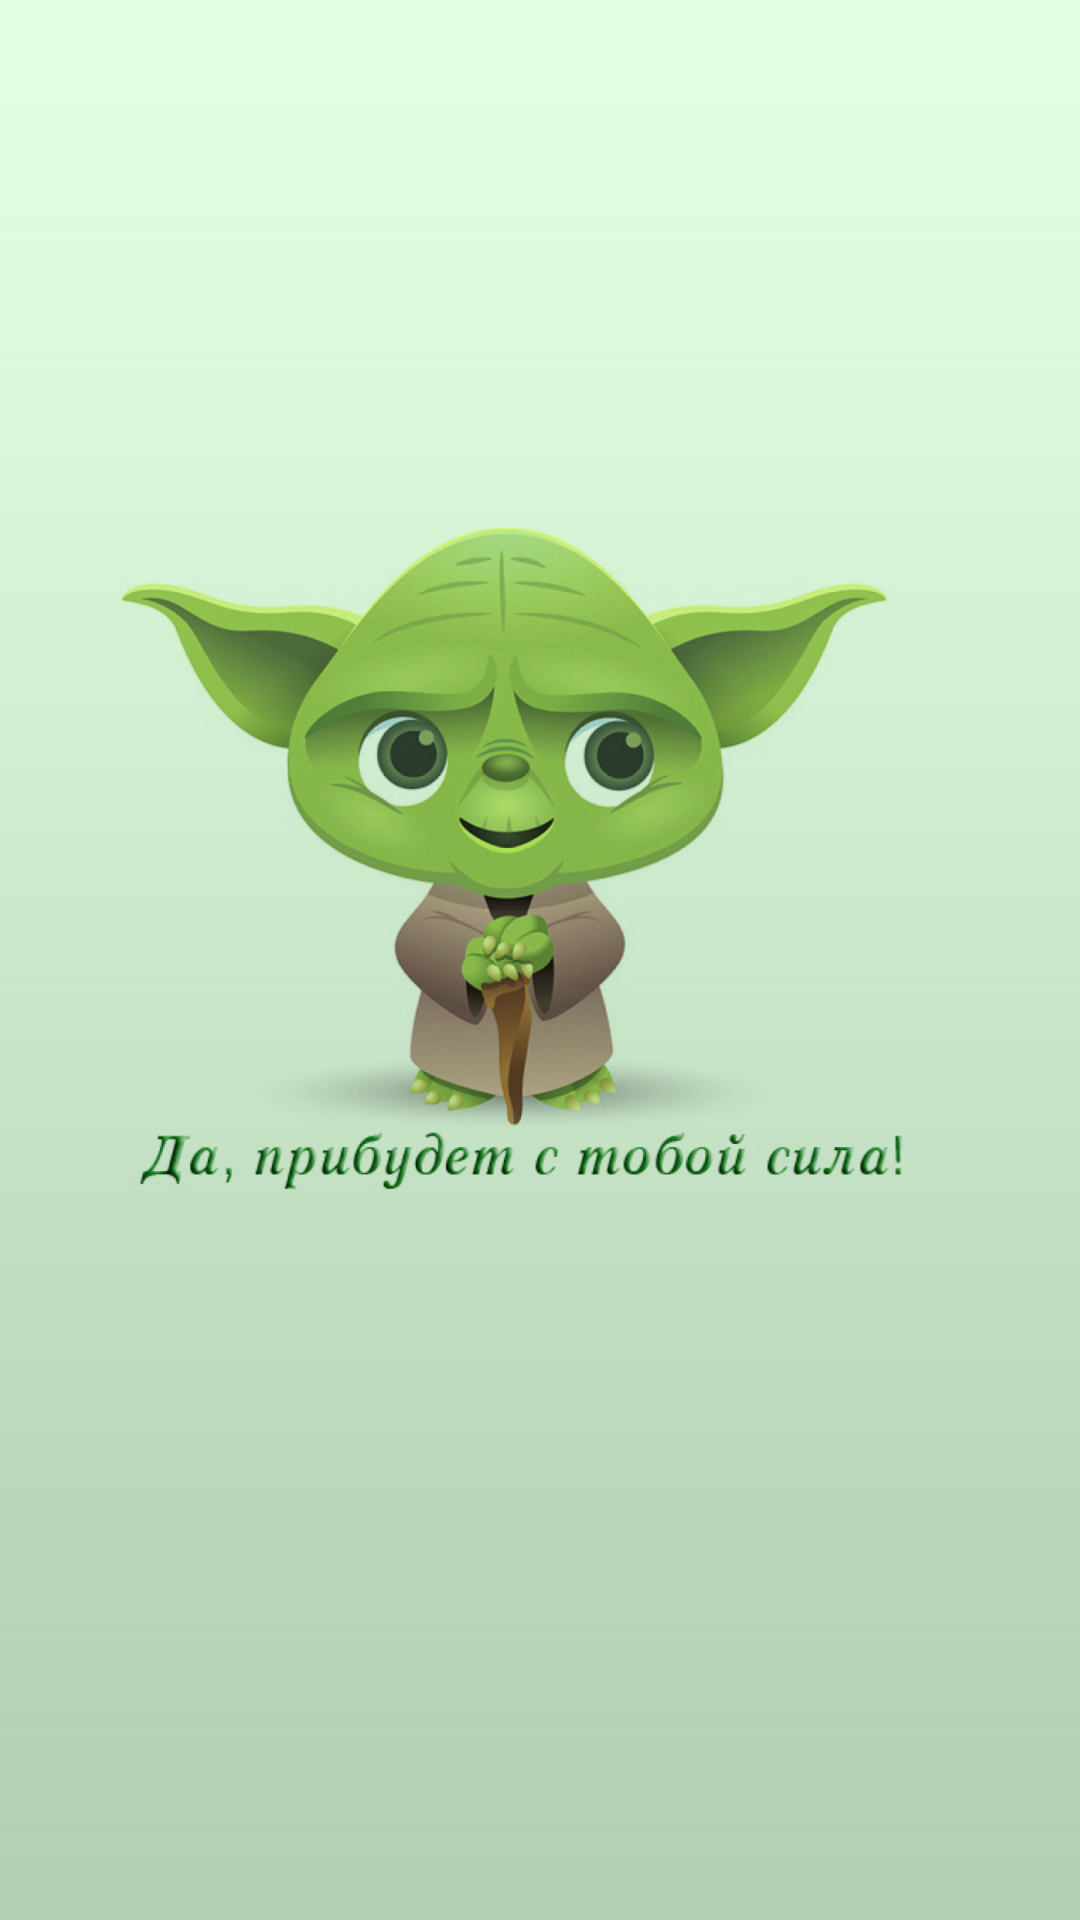 Yoda screenshot #1 1080x1920